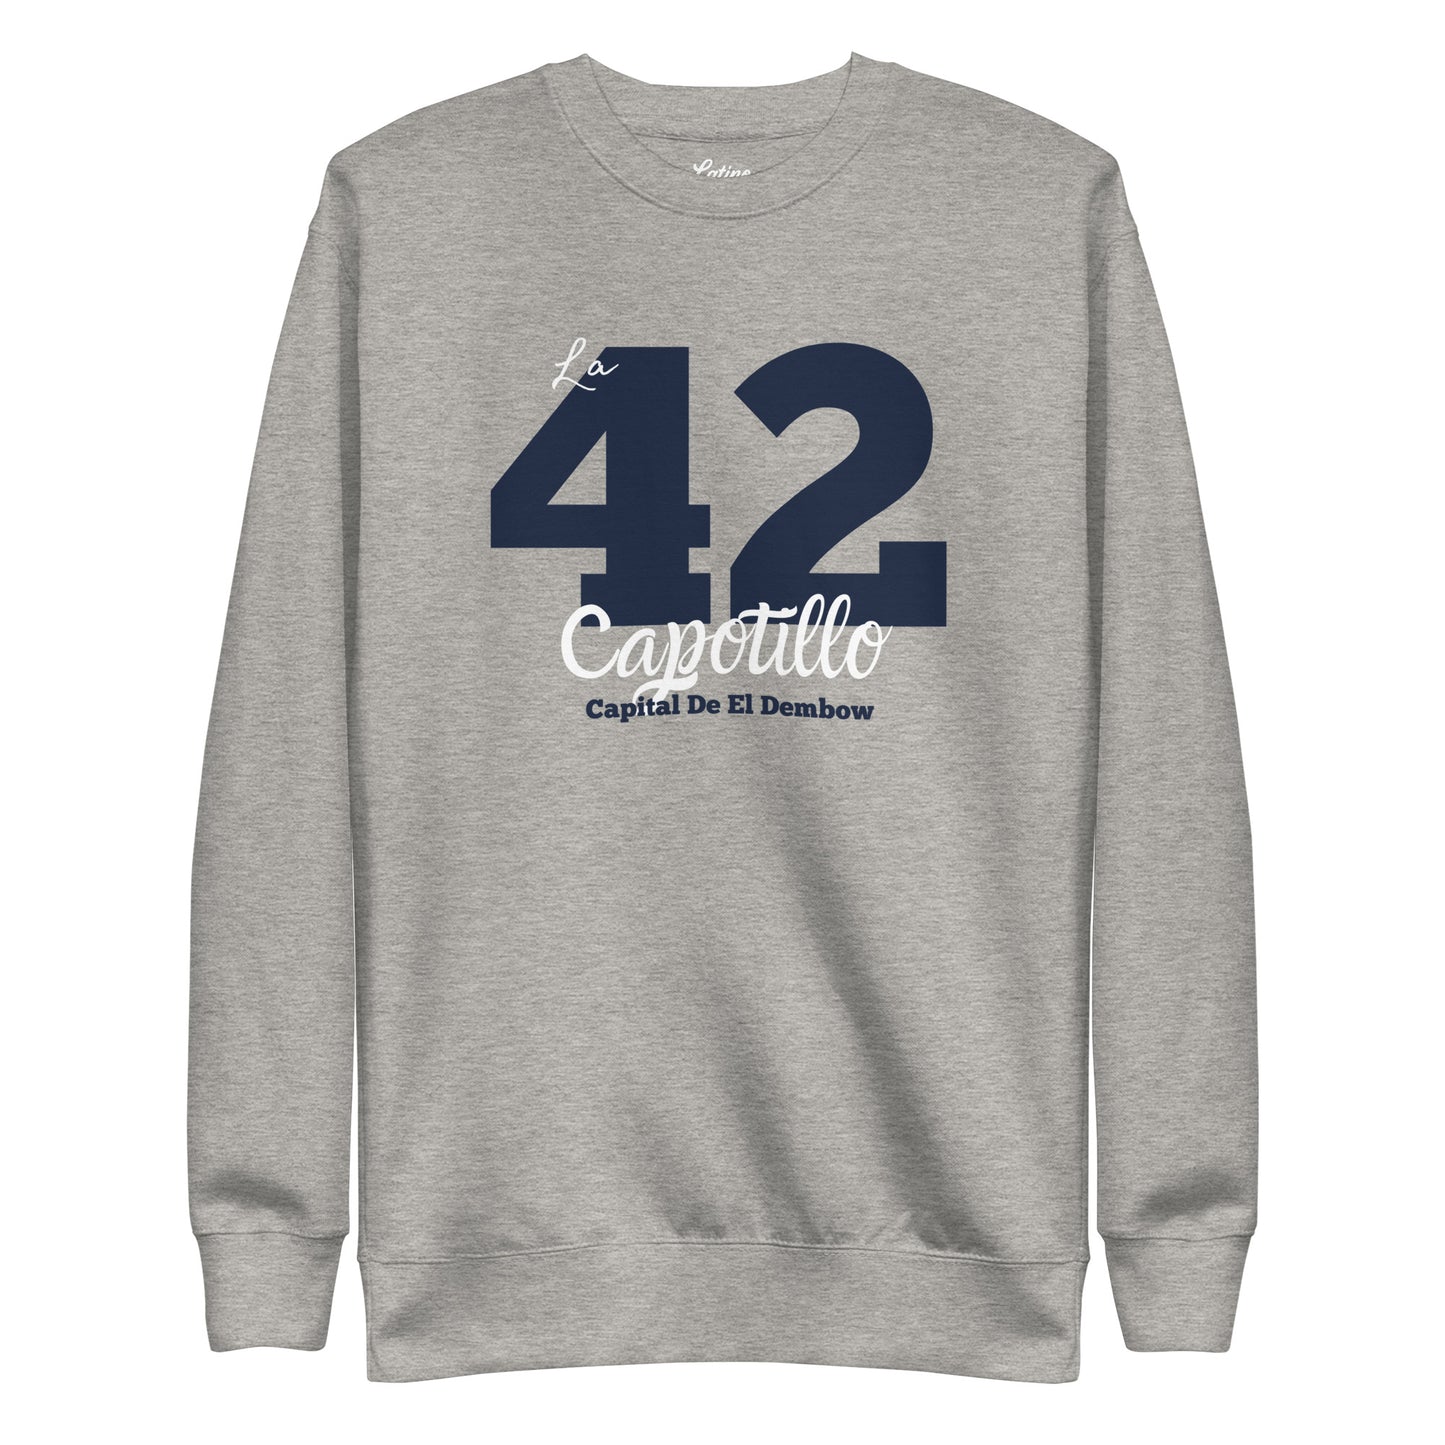 🇩🇴 La 42 x Dembow Capital Sweatshirt